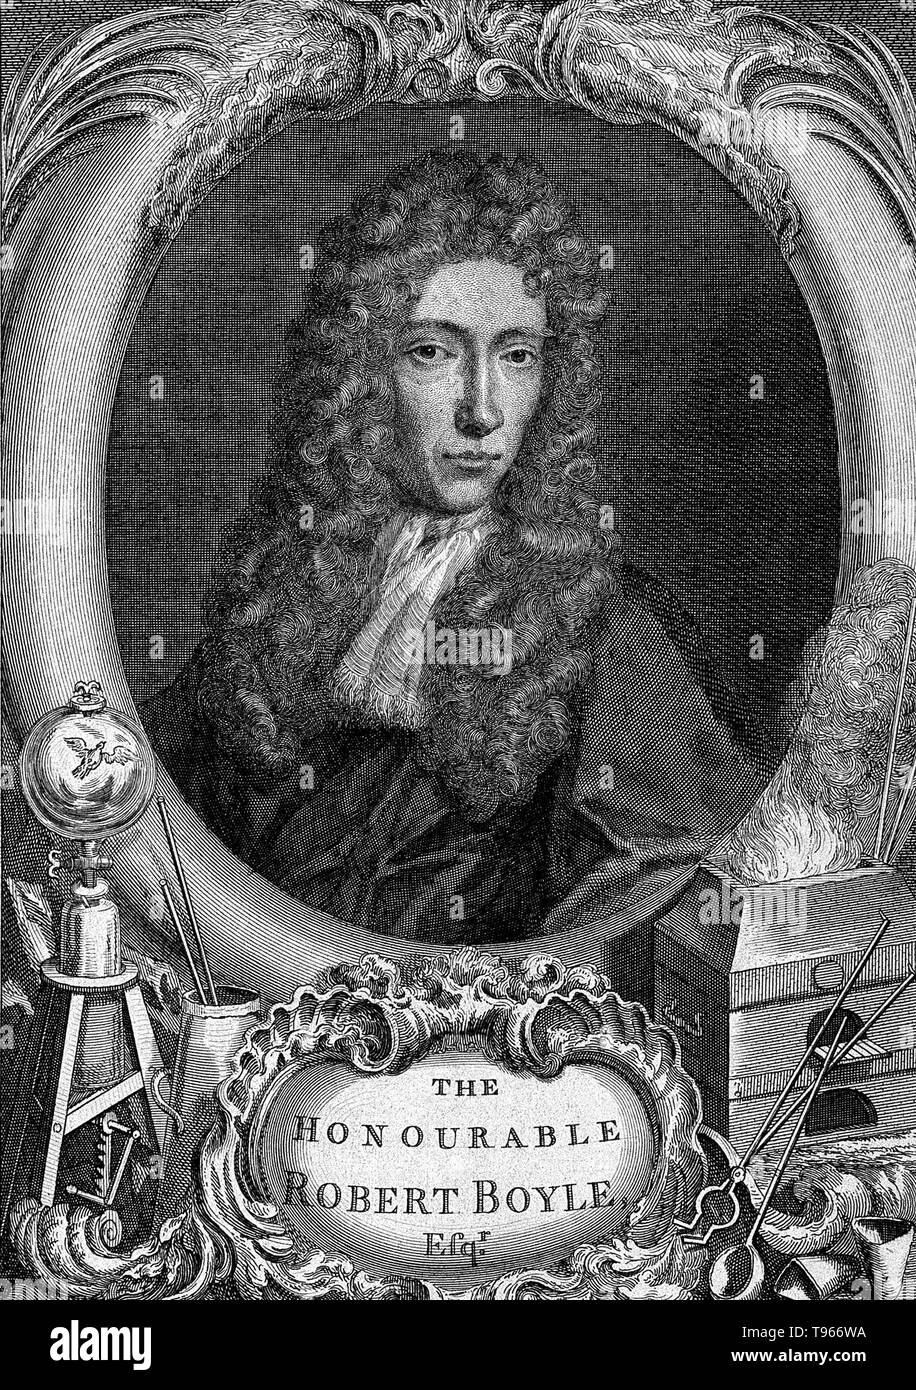 Robert Boyle (25 gennaio 1627 - 31 dicembre 1691) era un irlandese filosofo naturale, chimico, fisico e inventore. Egli è considerato oggi come il primo moderno chimico, e uno dei pionieri della moderna sperimentale metodo scientifico. Morì nel 1691 all'età di 64. Ritratto di Frederic Kerseboom non datato. Foto Stock